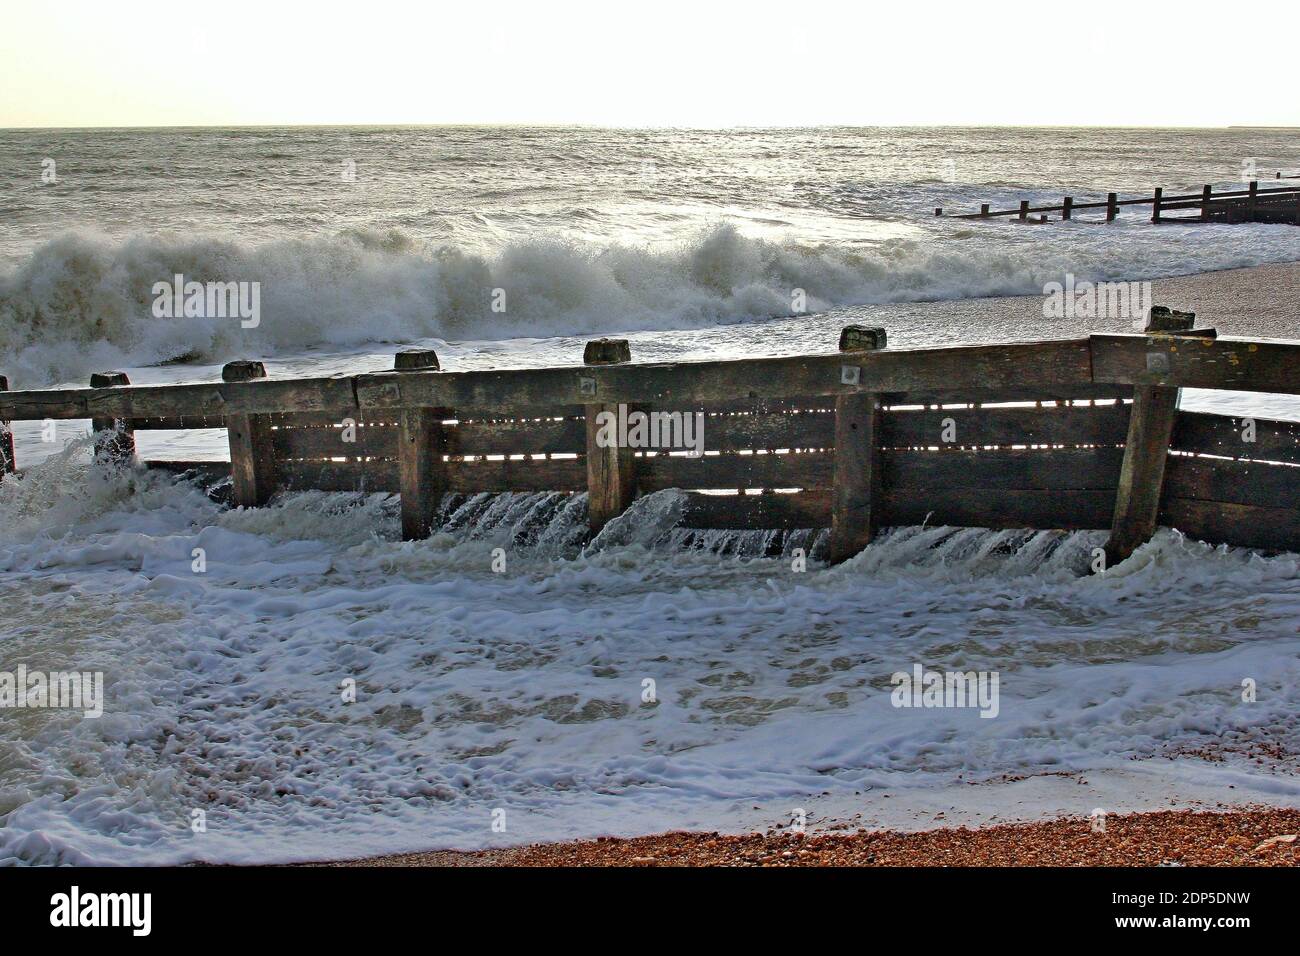 Vecchi groynes intemperie che proteggono la spiaggia di Pevensey Bay sulla costa meridionale dell'Inghilterra. Senza groynes la spiaggia soffrirebbe di erosione. Foto Stock